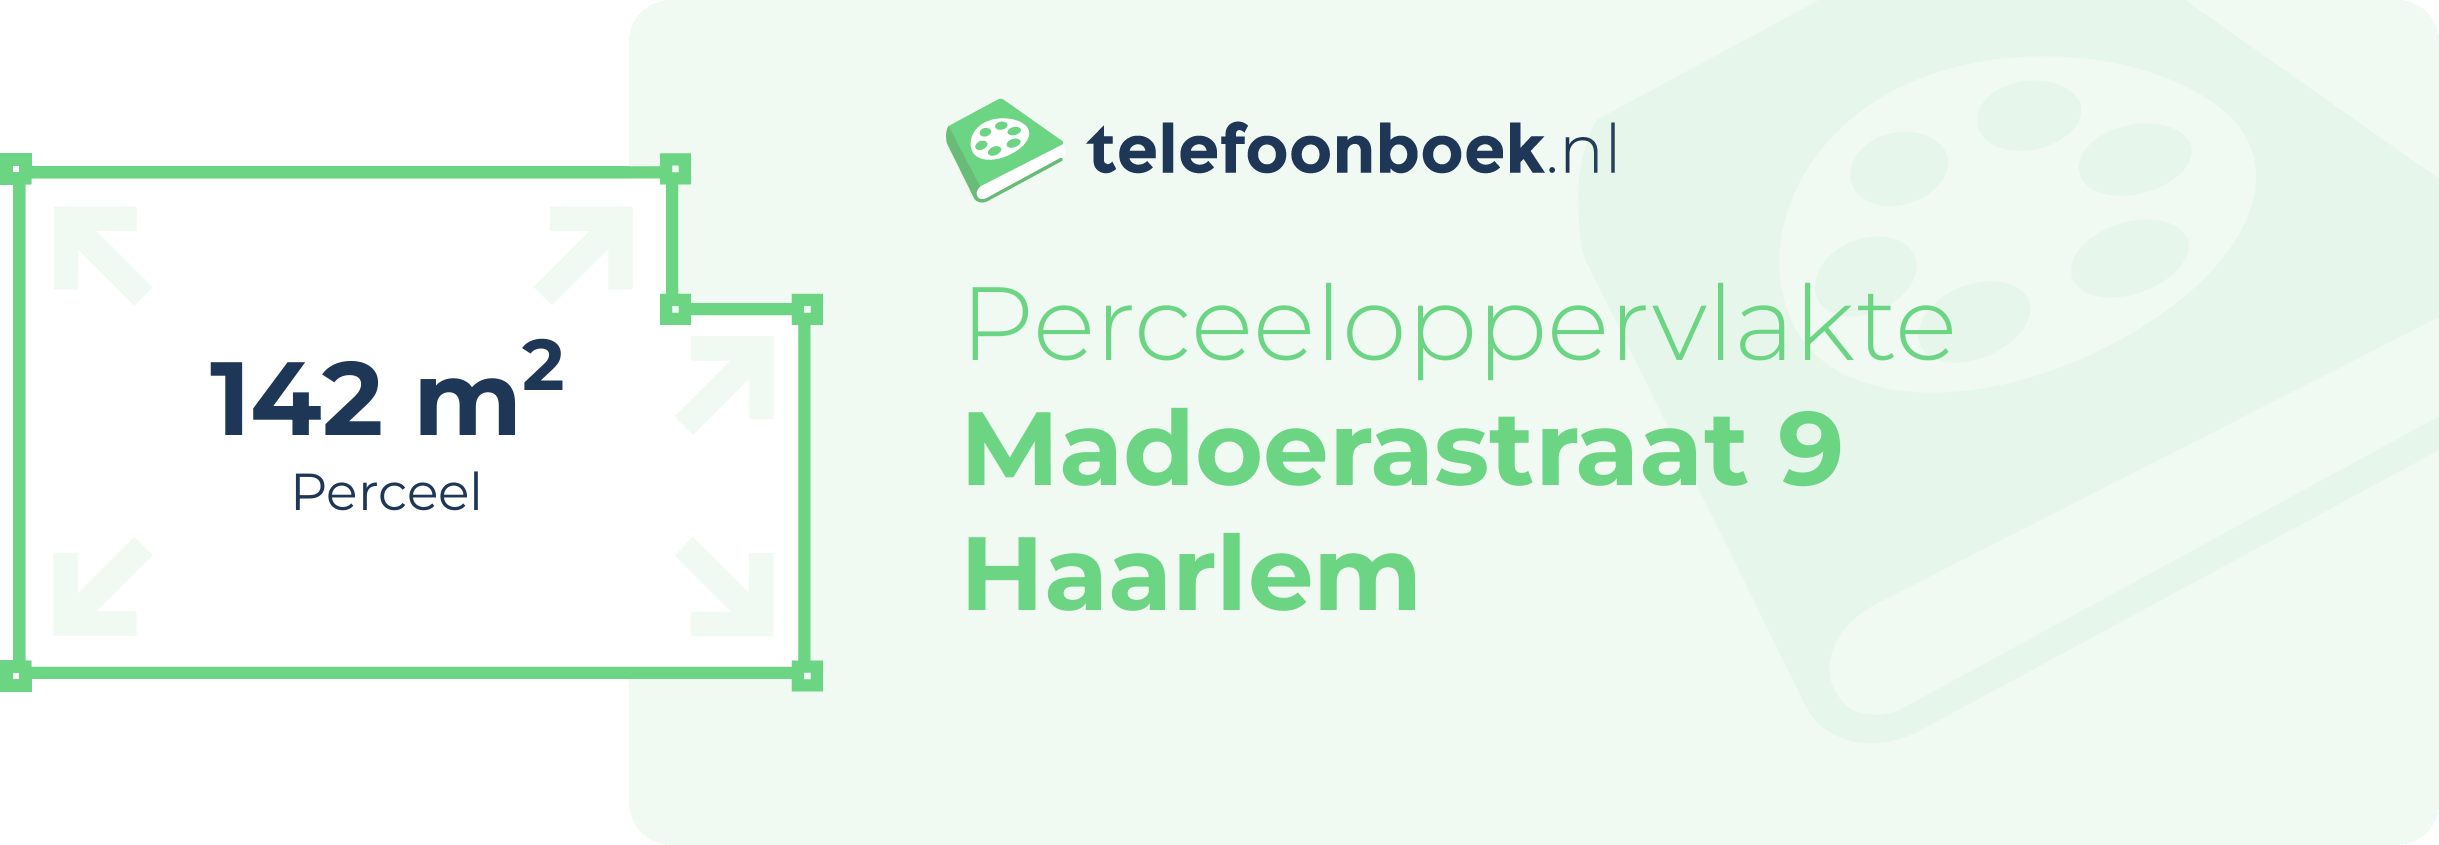 Perceeloppervlakte Madoerastraat 9 Haarlem